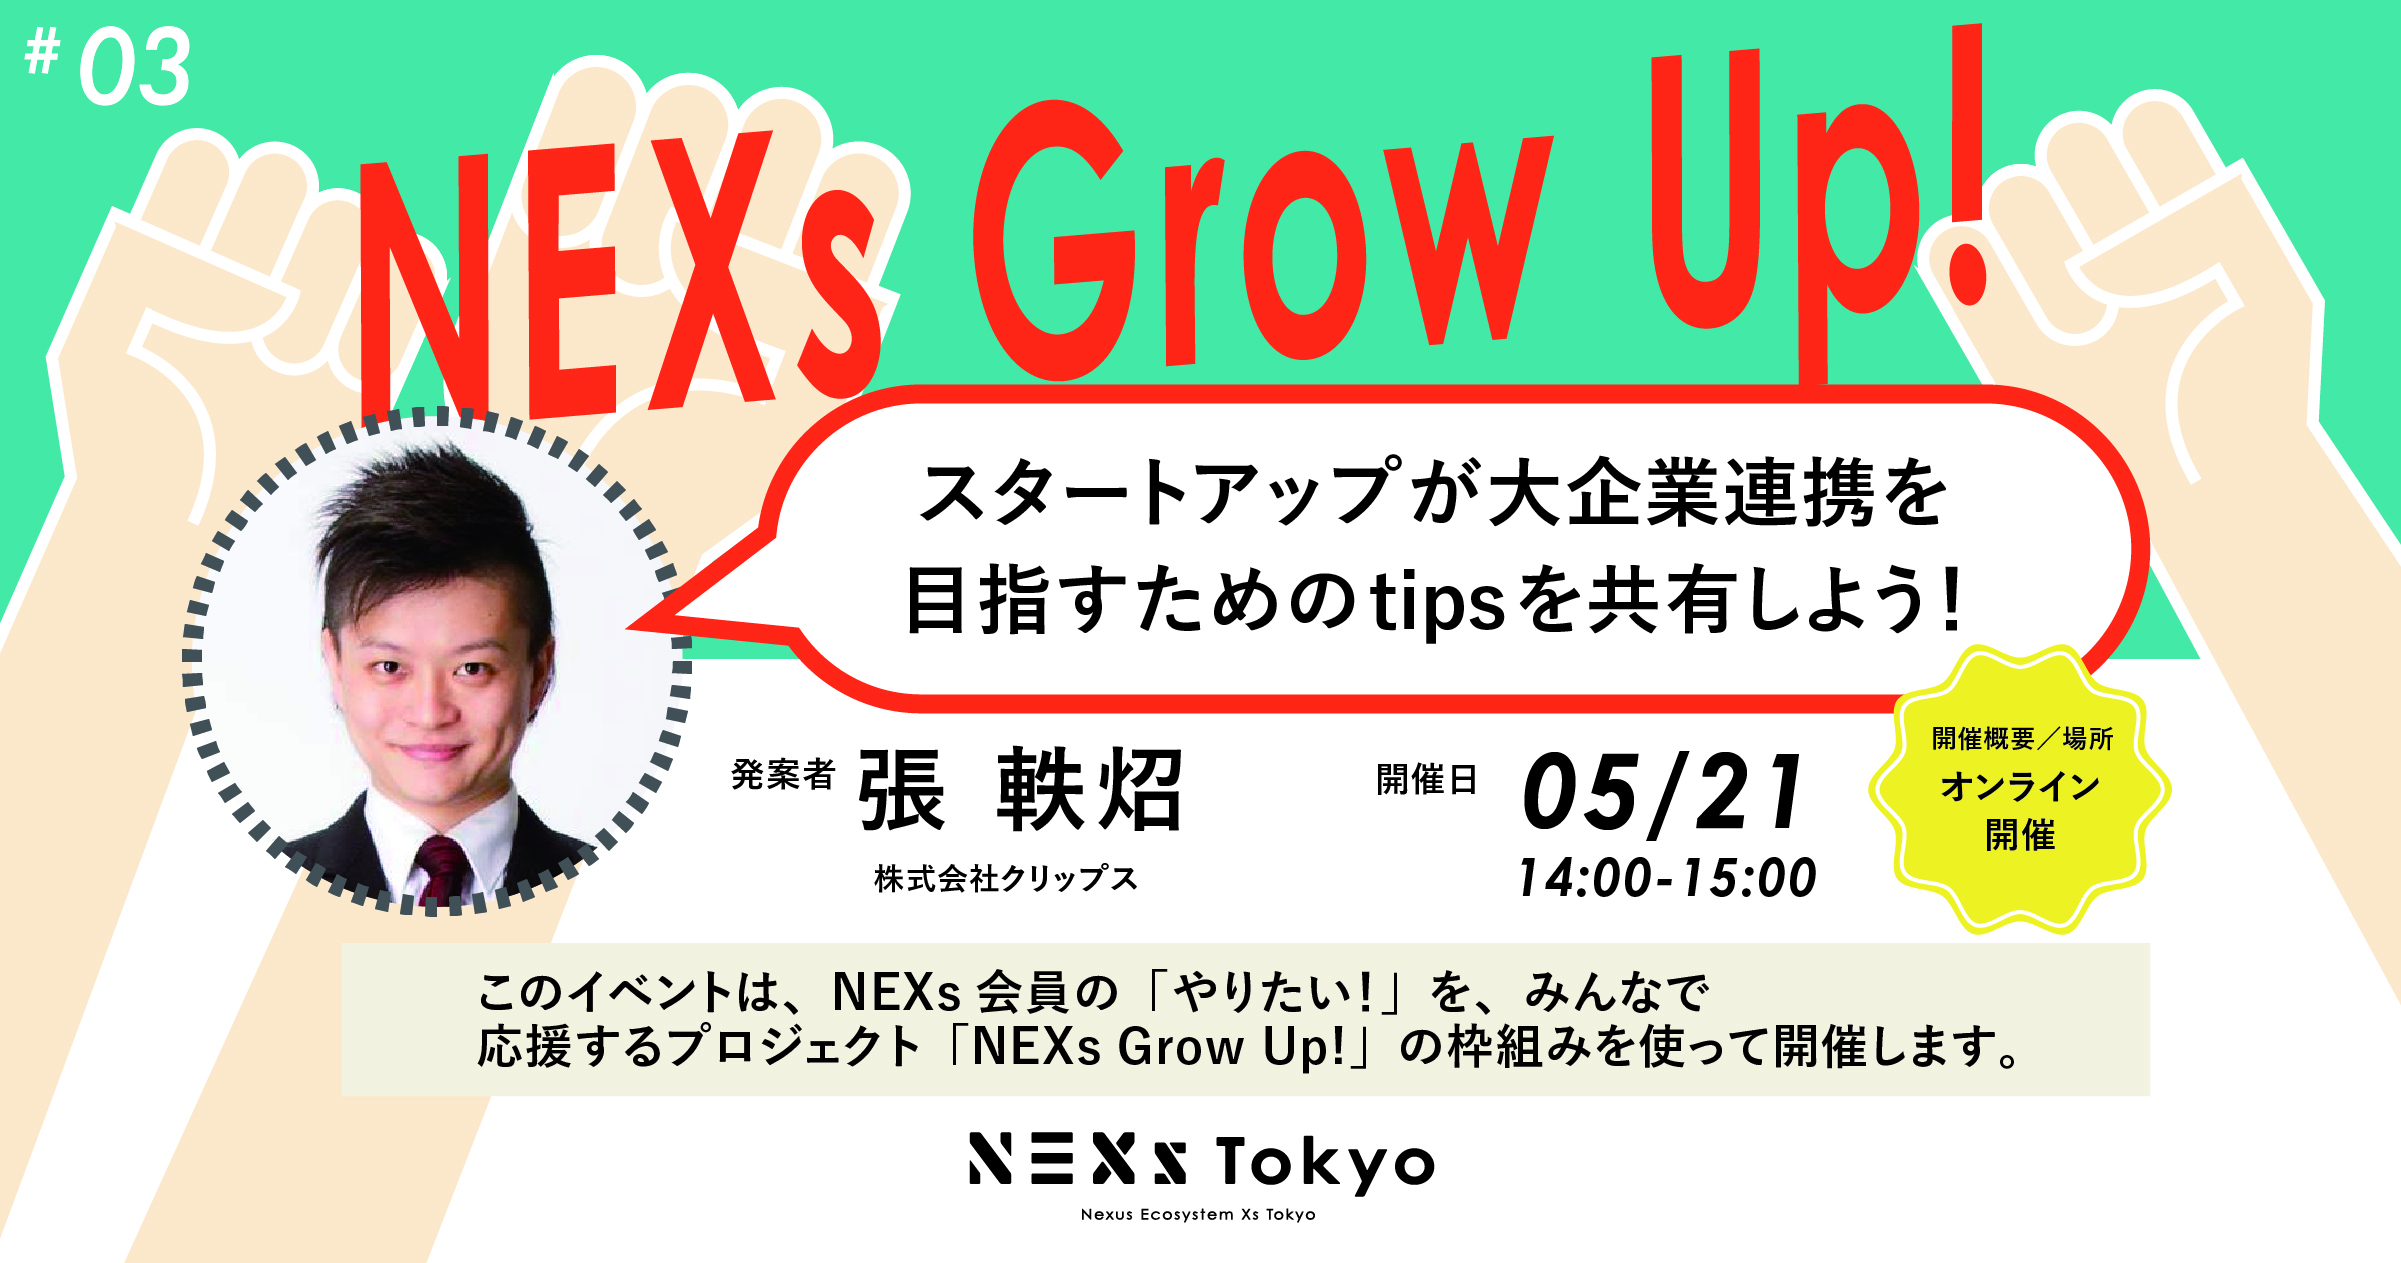 NEXs Grow Up! Vol.3-スタートアップが大企業連携を目指すためのtipsを共有しよう！-